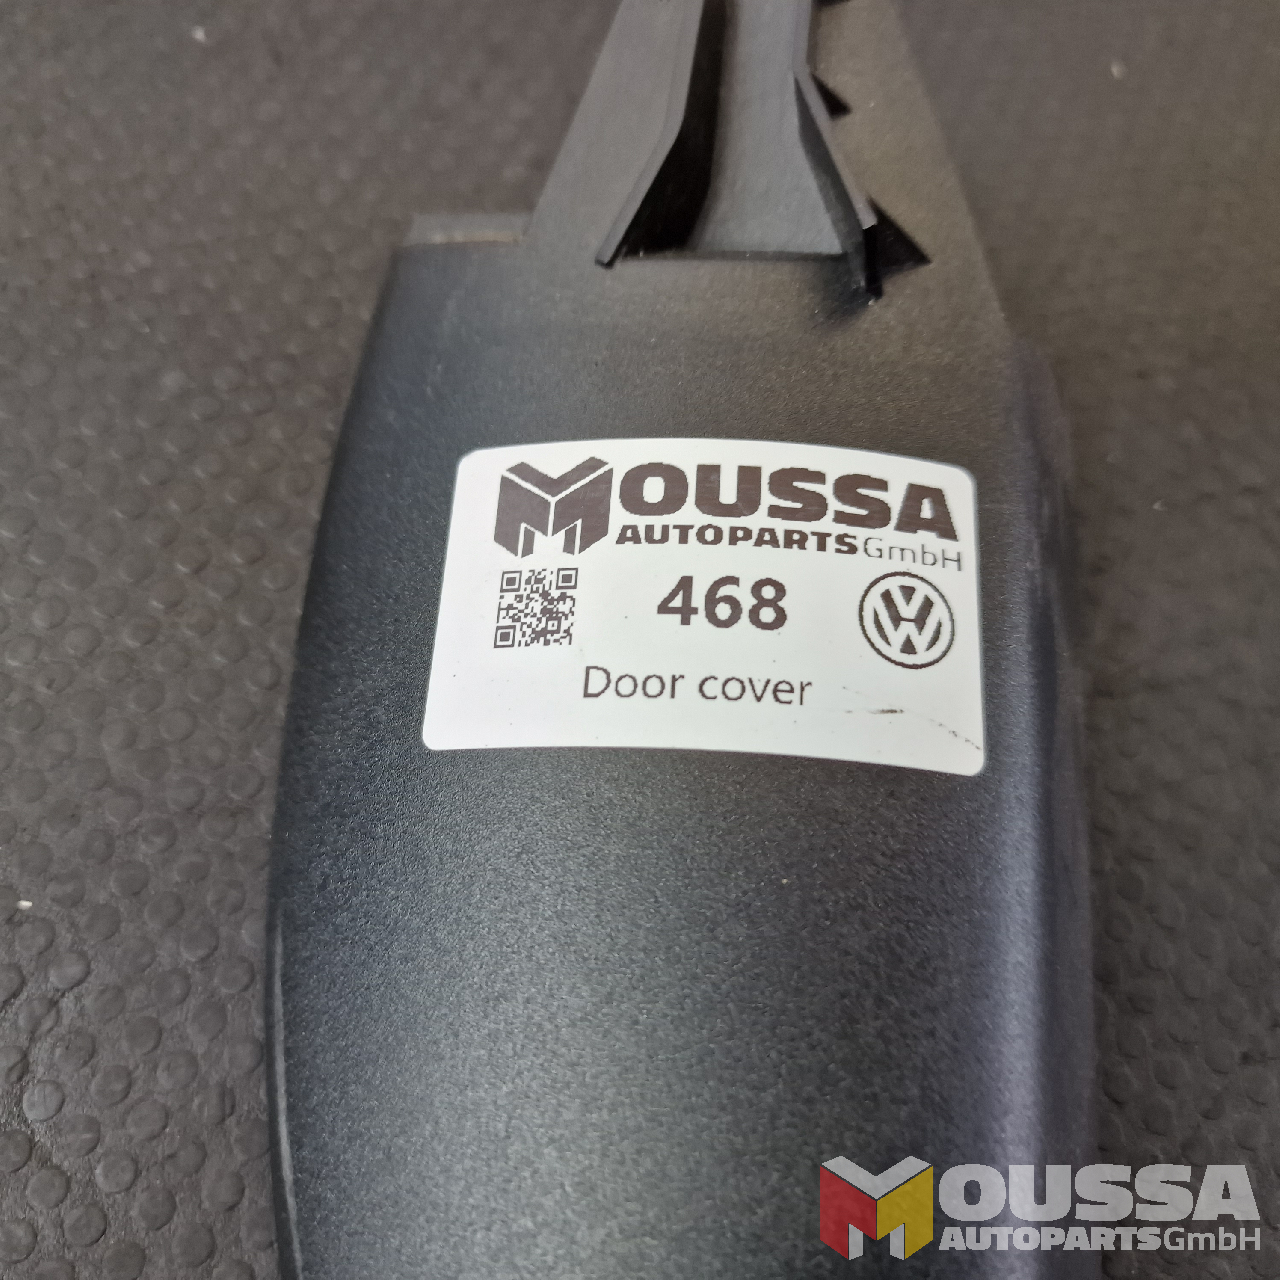 MOUSSA-AUTOPARTS-64a3c682a92dc.jpg